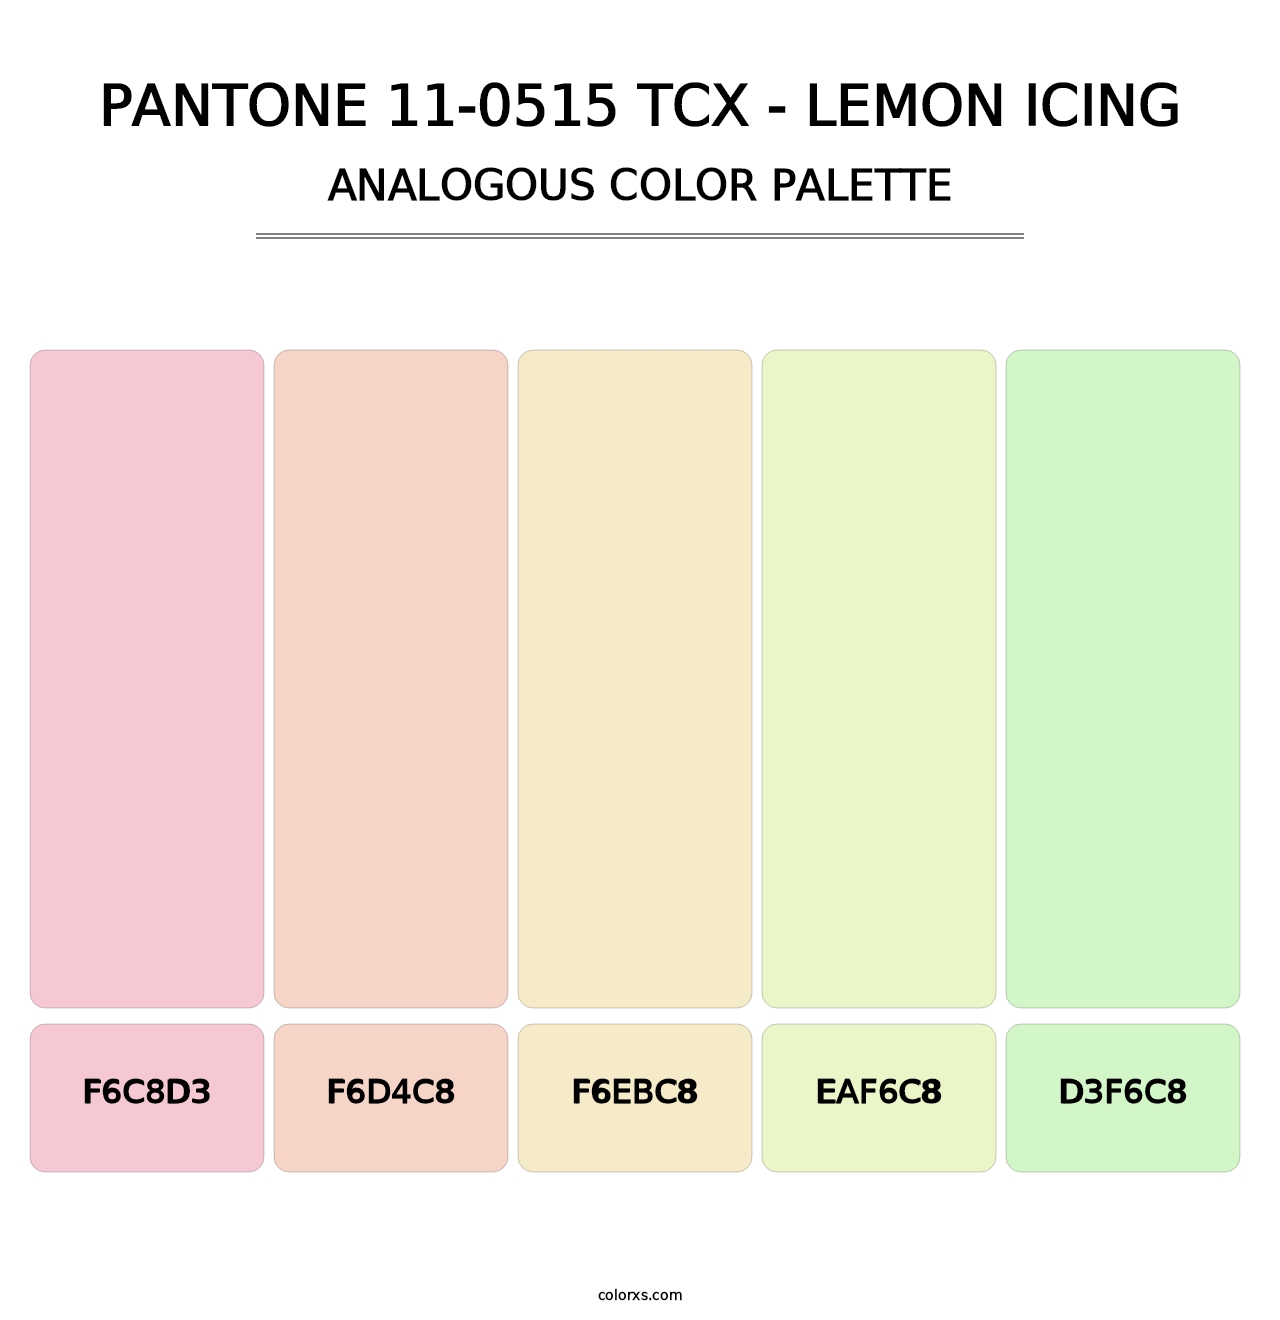 PANTONE 11-0515 TCX - Lemon Icing - Analogous Color Palette